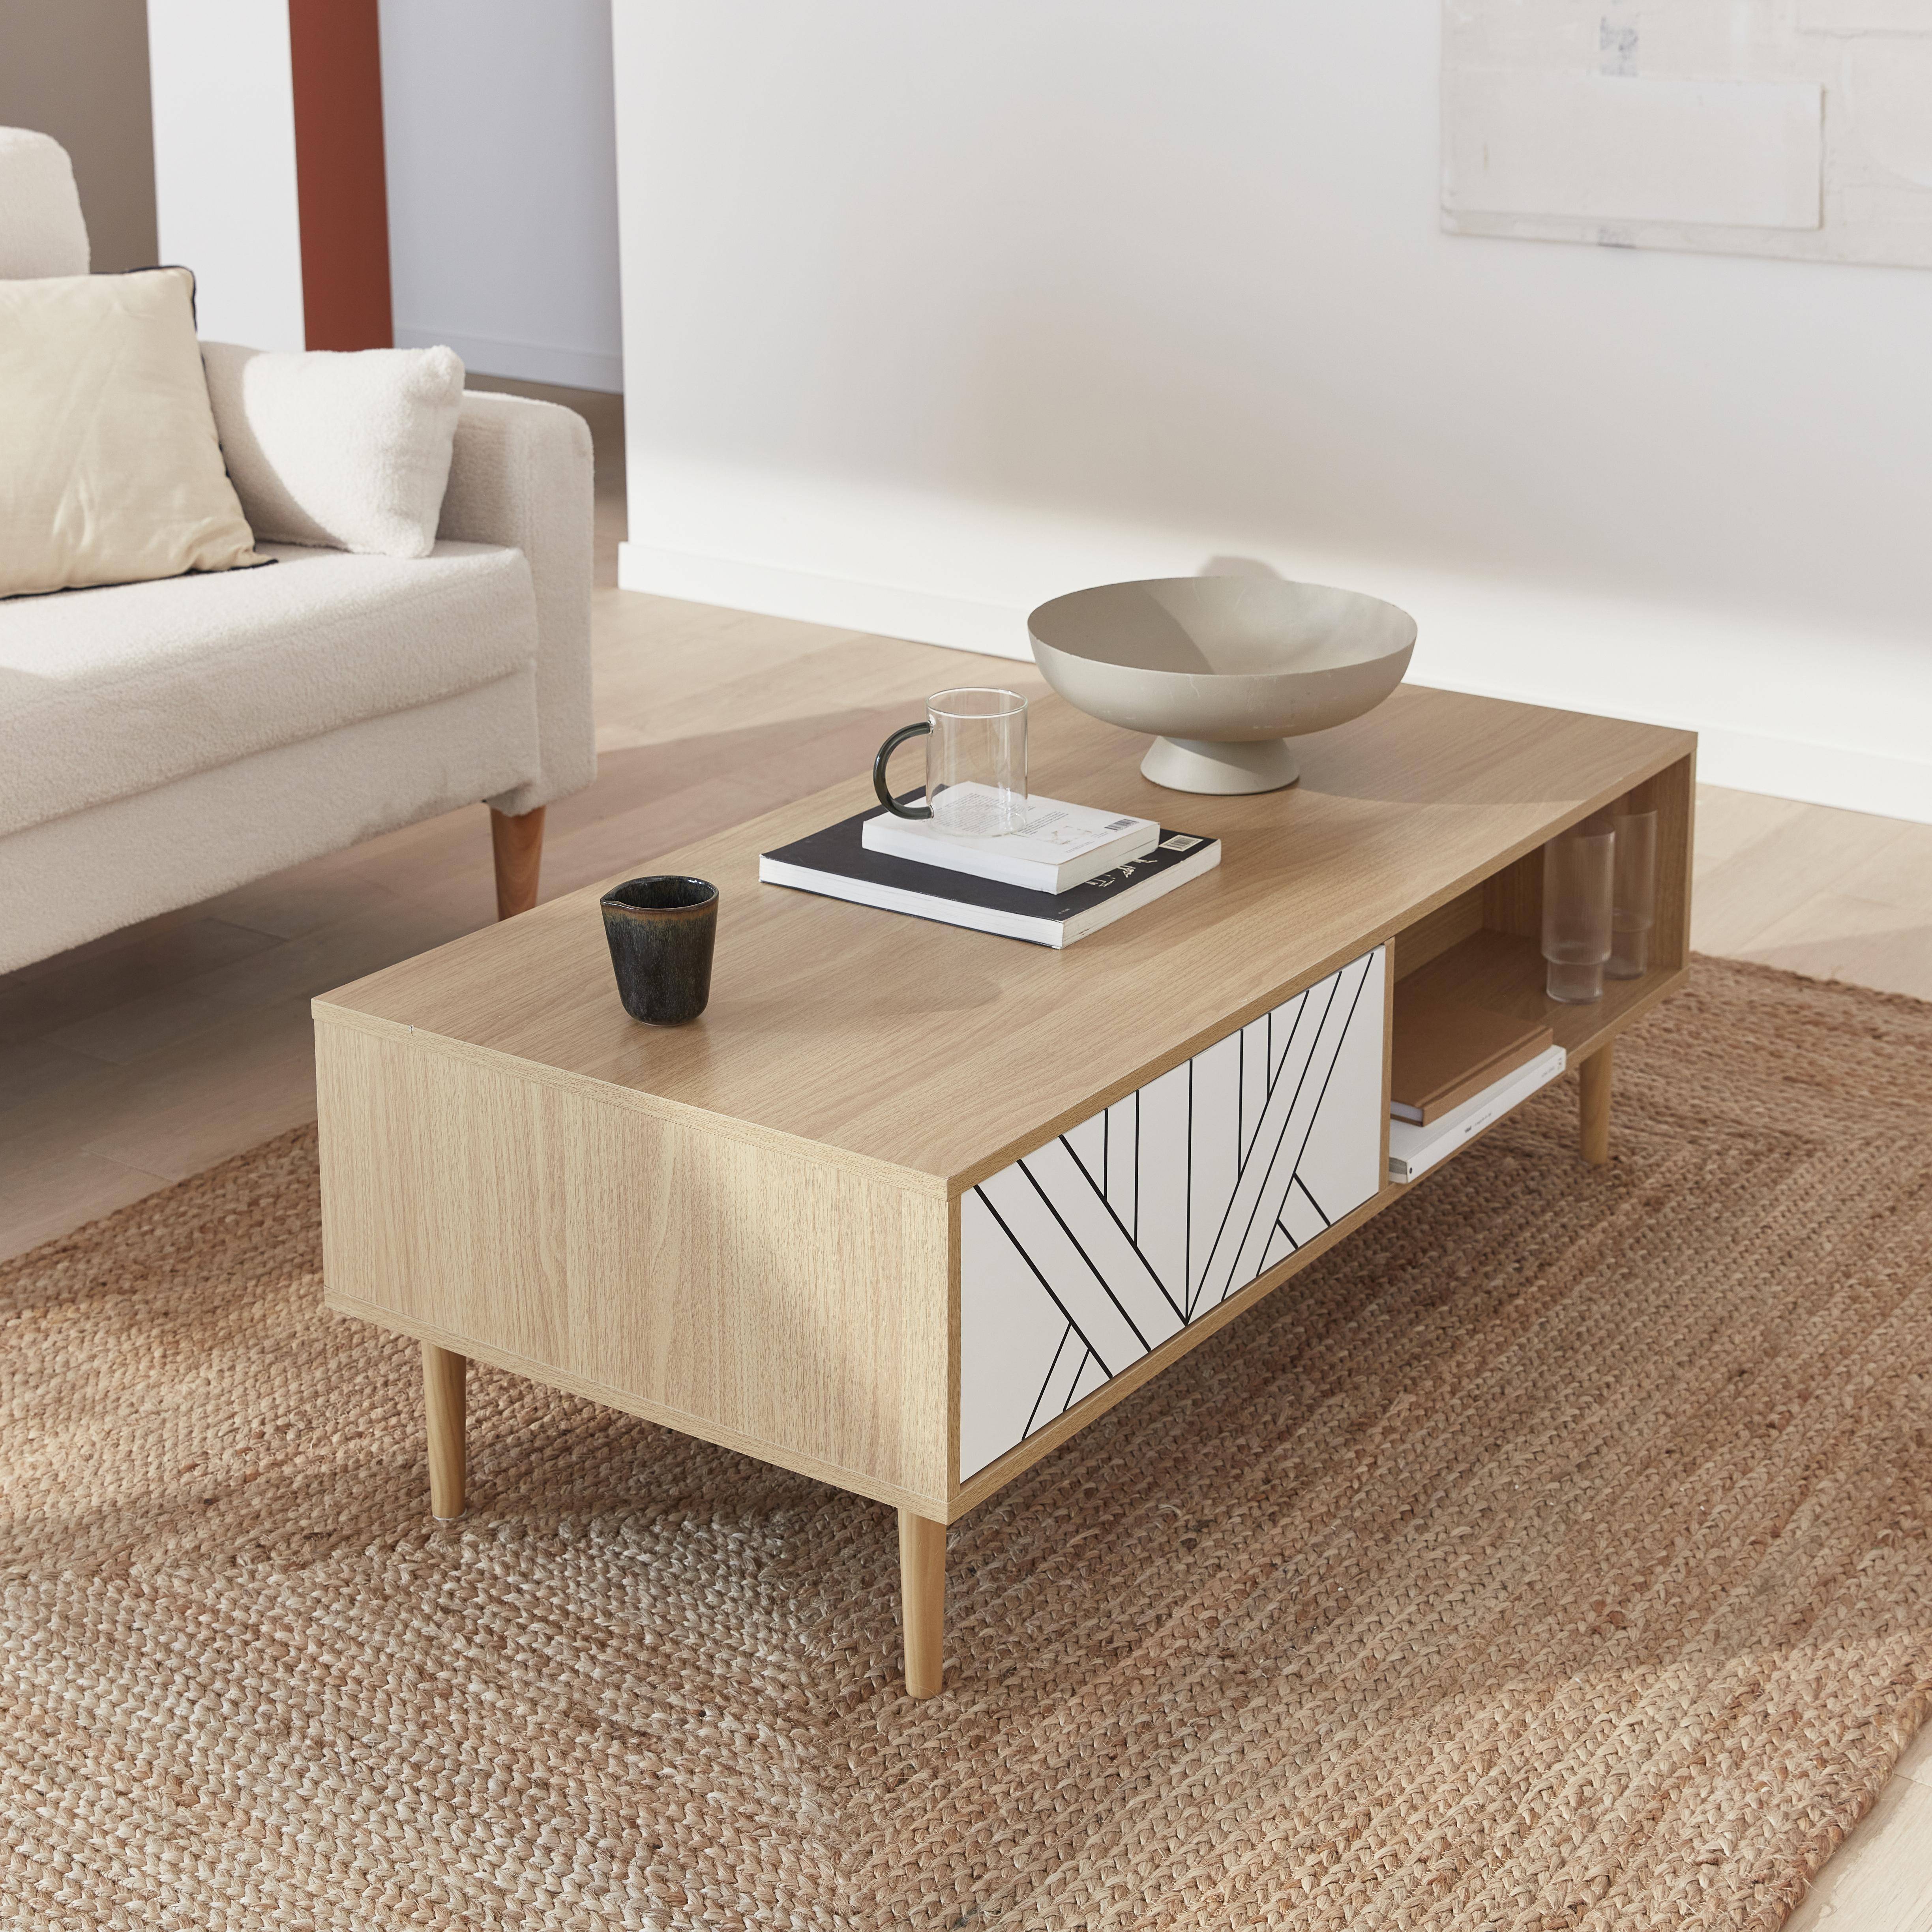 Wood-effect coffee table, 120x55x40cm, Mika, White,sweeek,Photo1